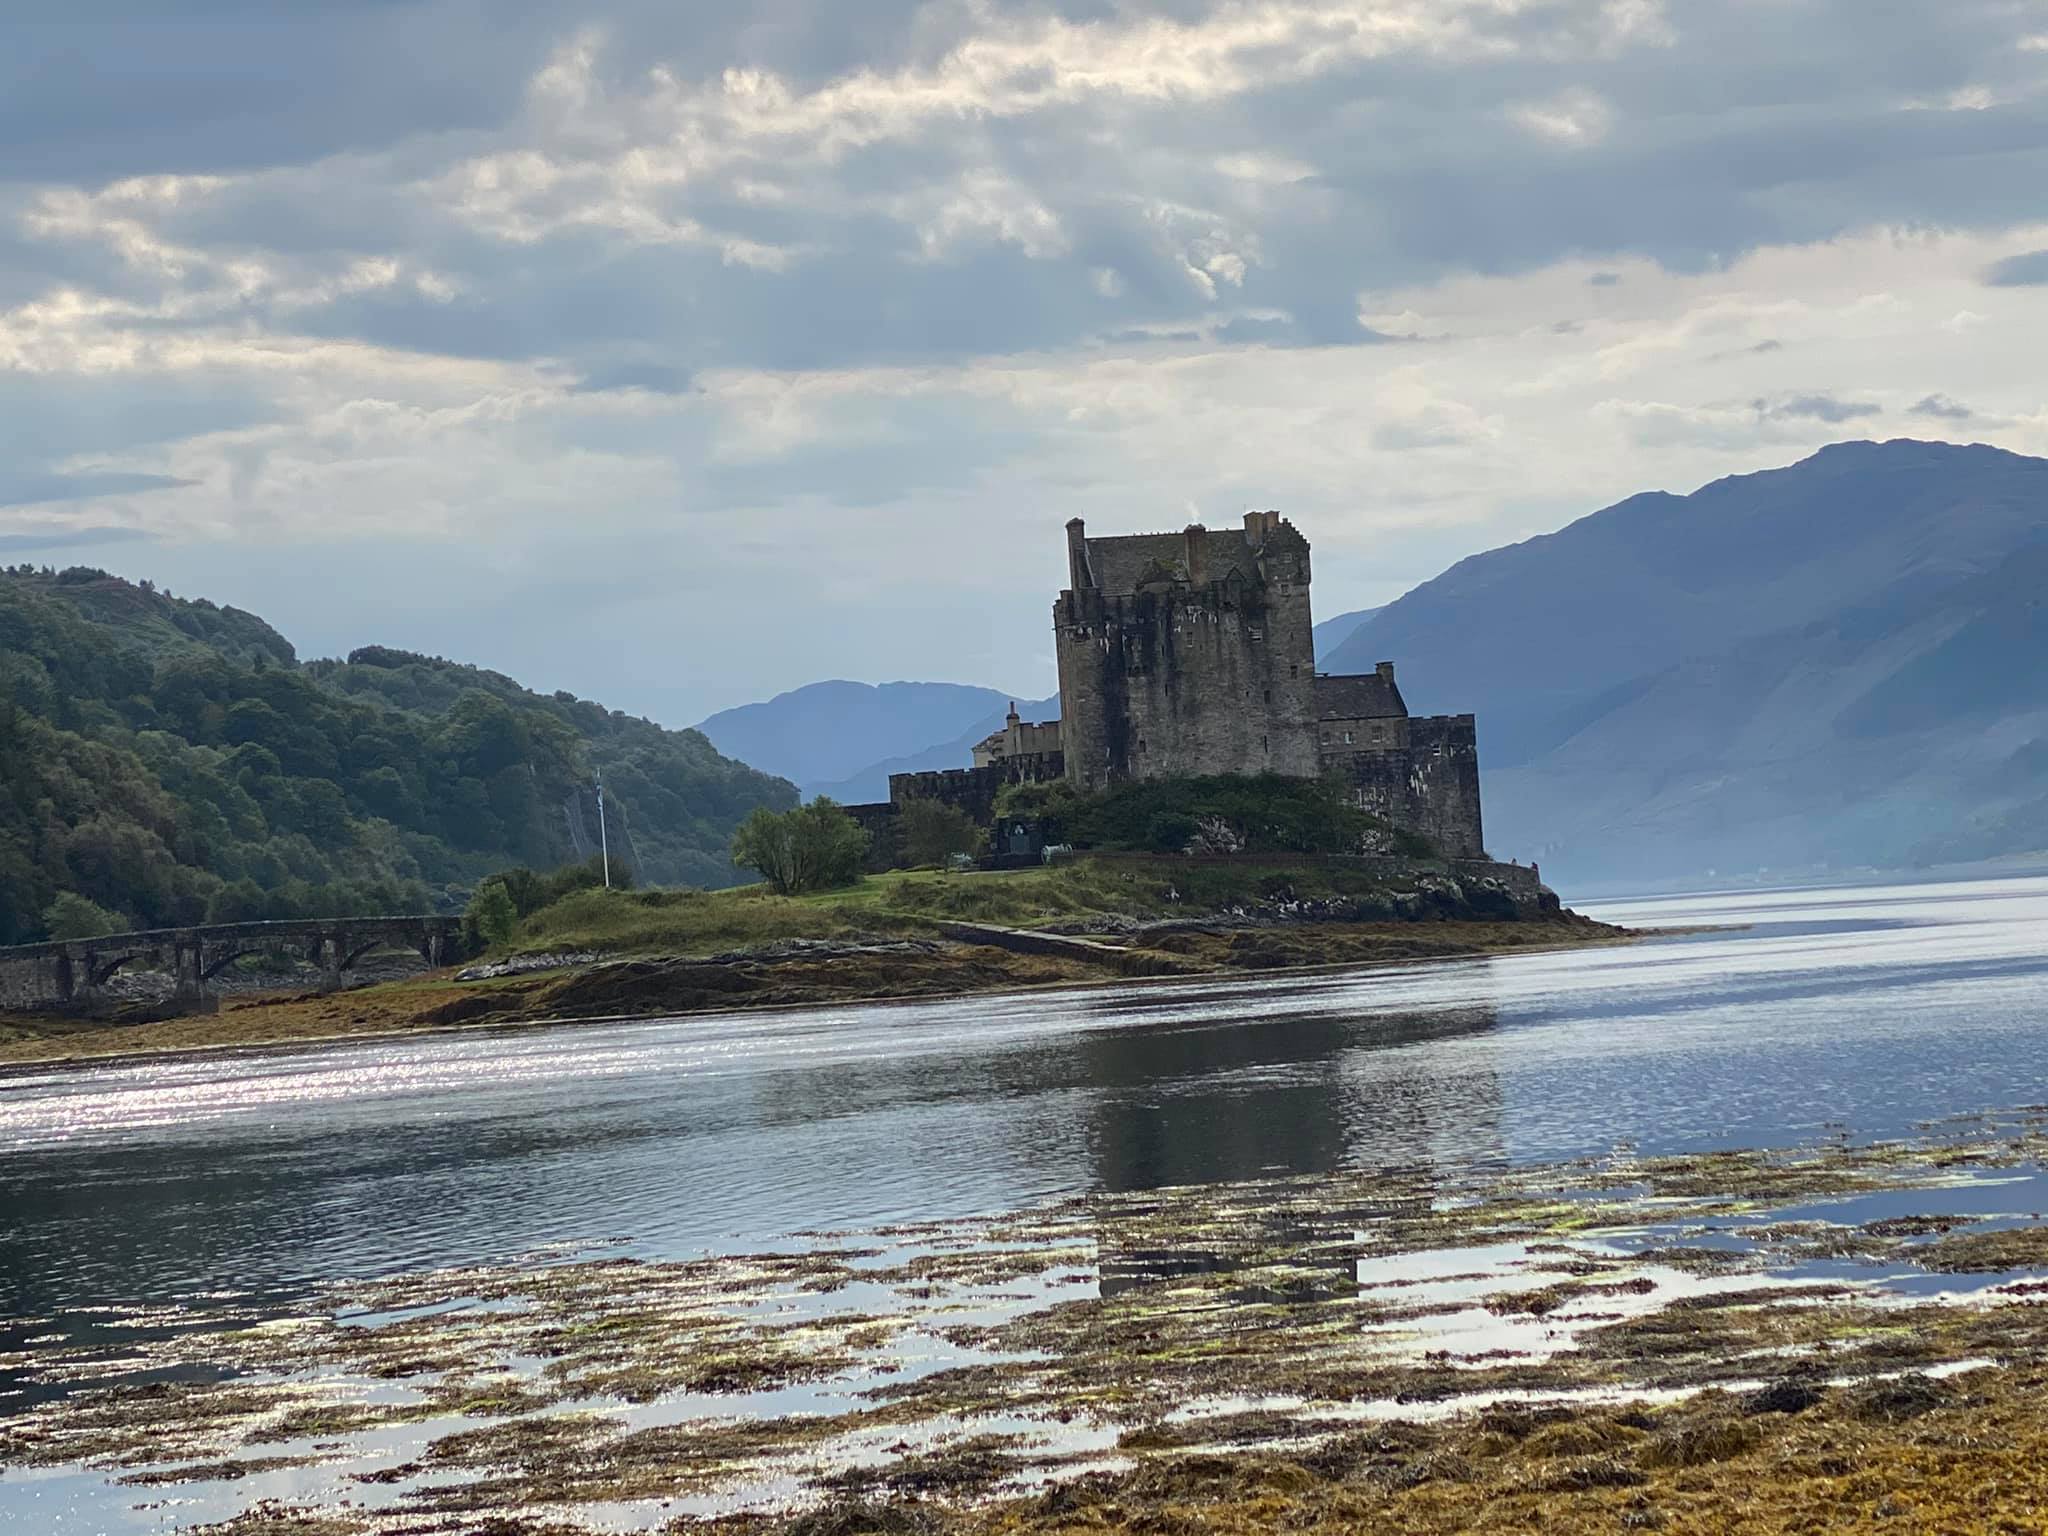 Skócia látnivalók Edinboruhból Skót felföld skye sziget 14 nap alatt